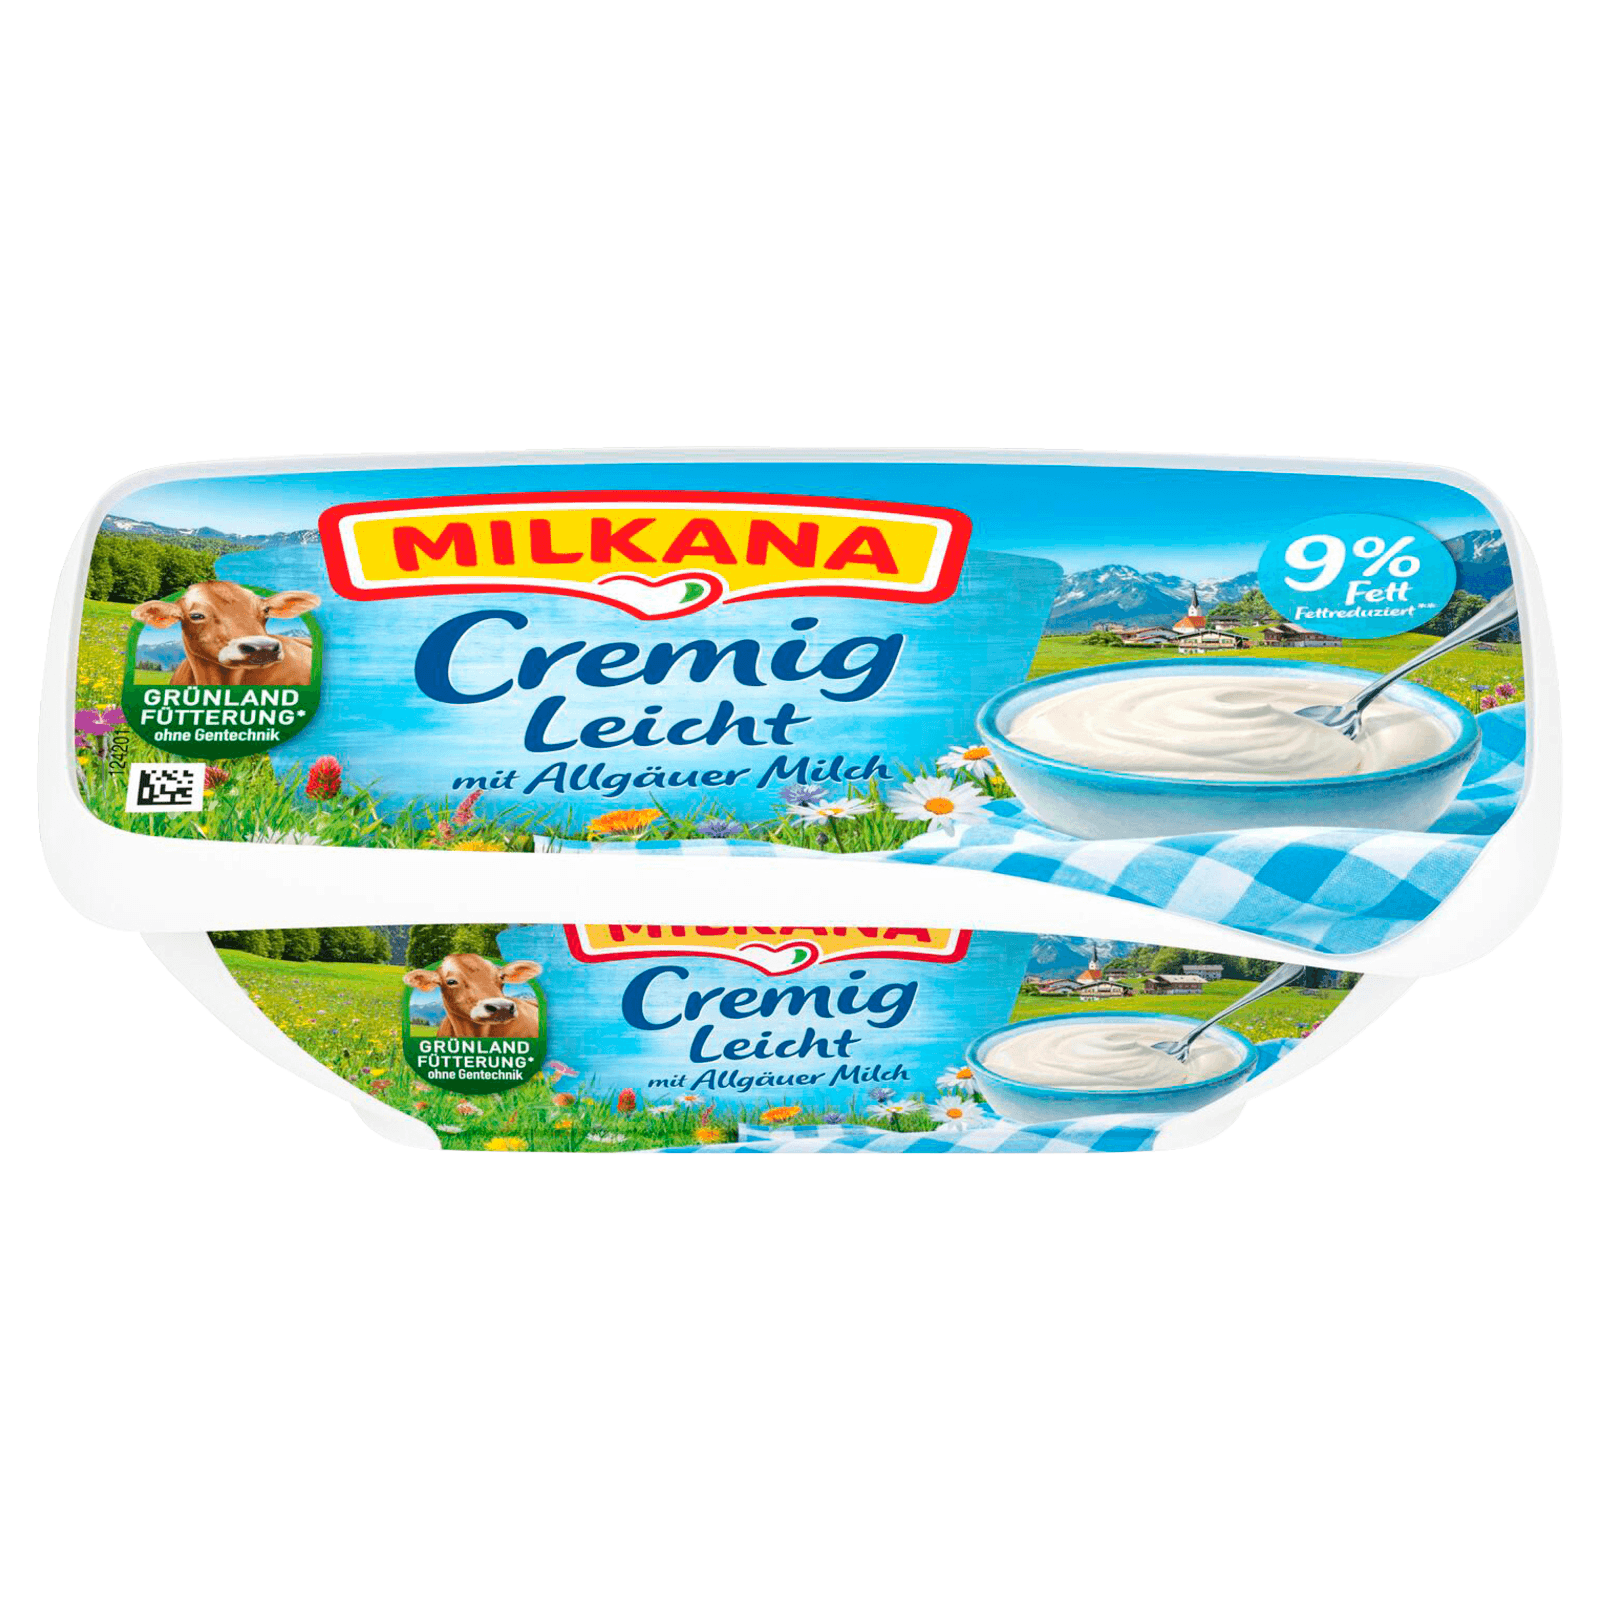 Cremig 190g REWE Leicht Milkana bestellen! bei Schmelzkäse online